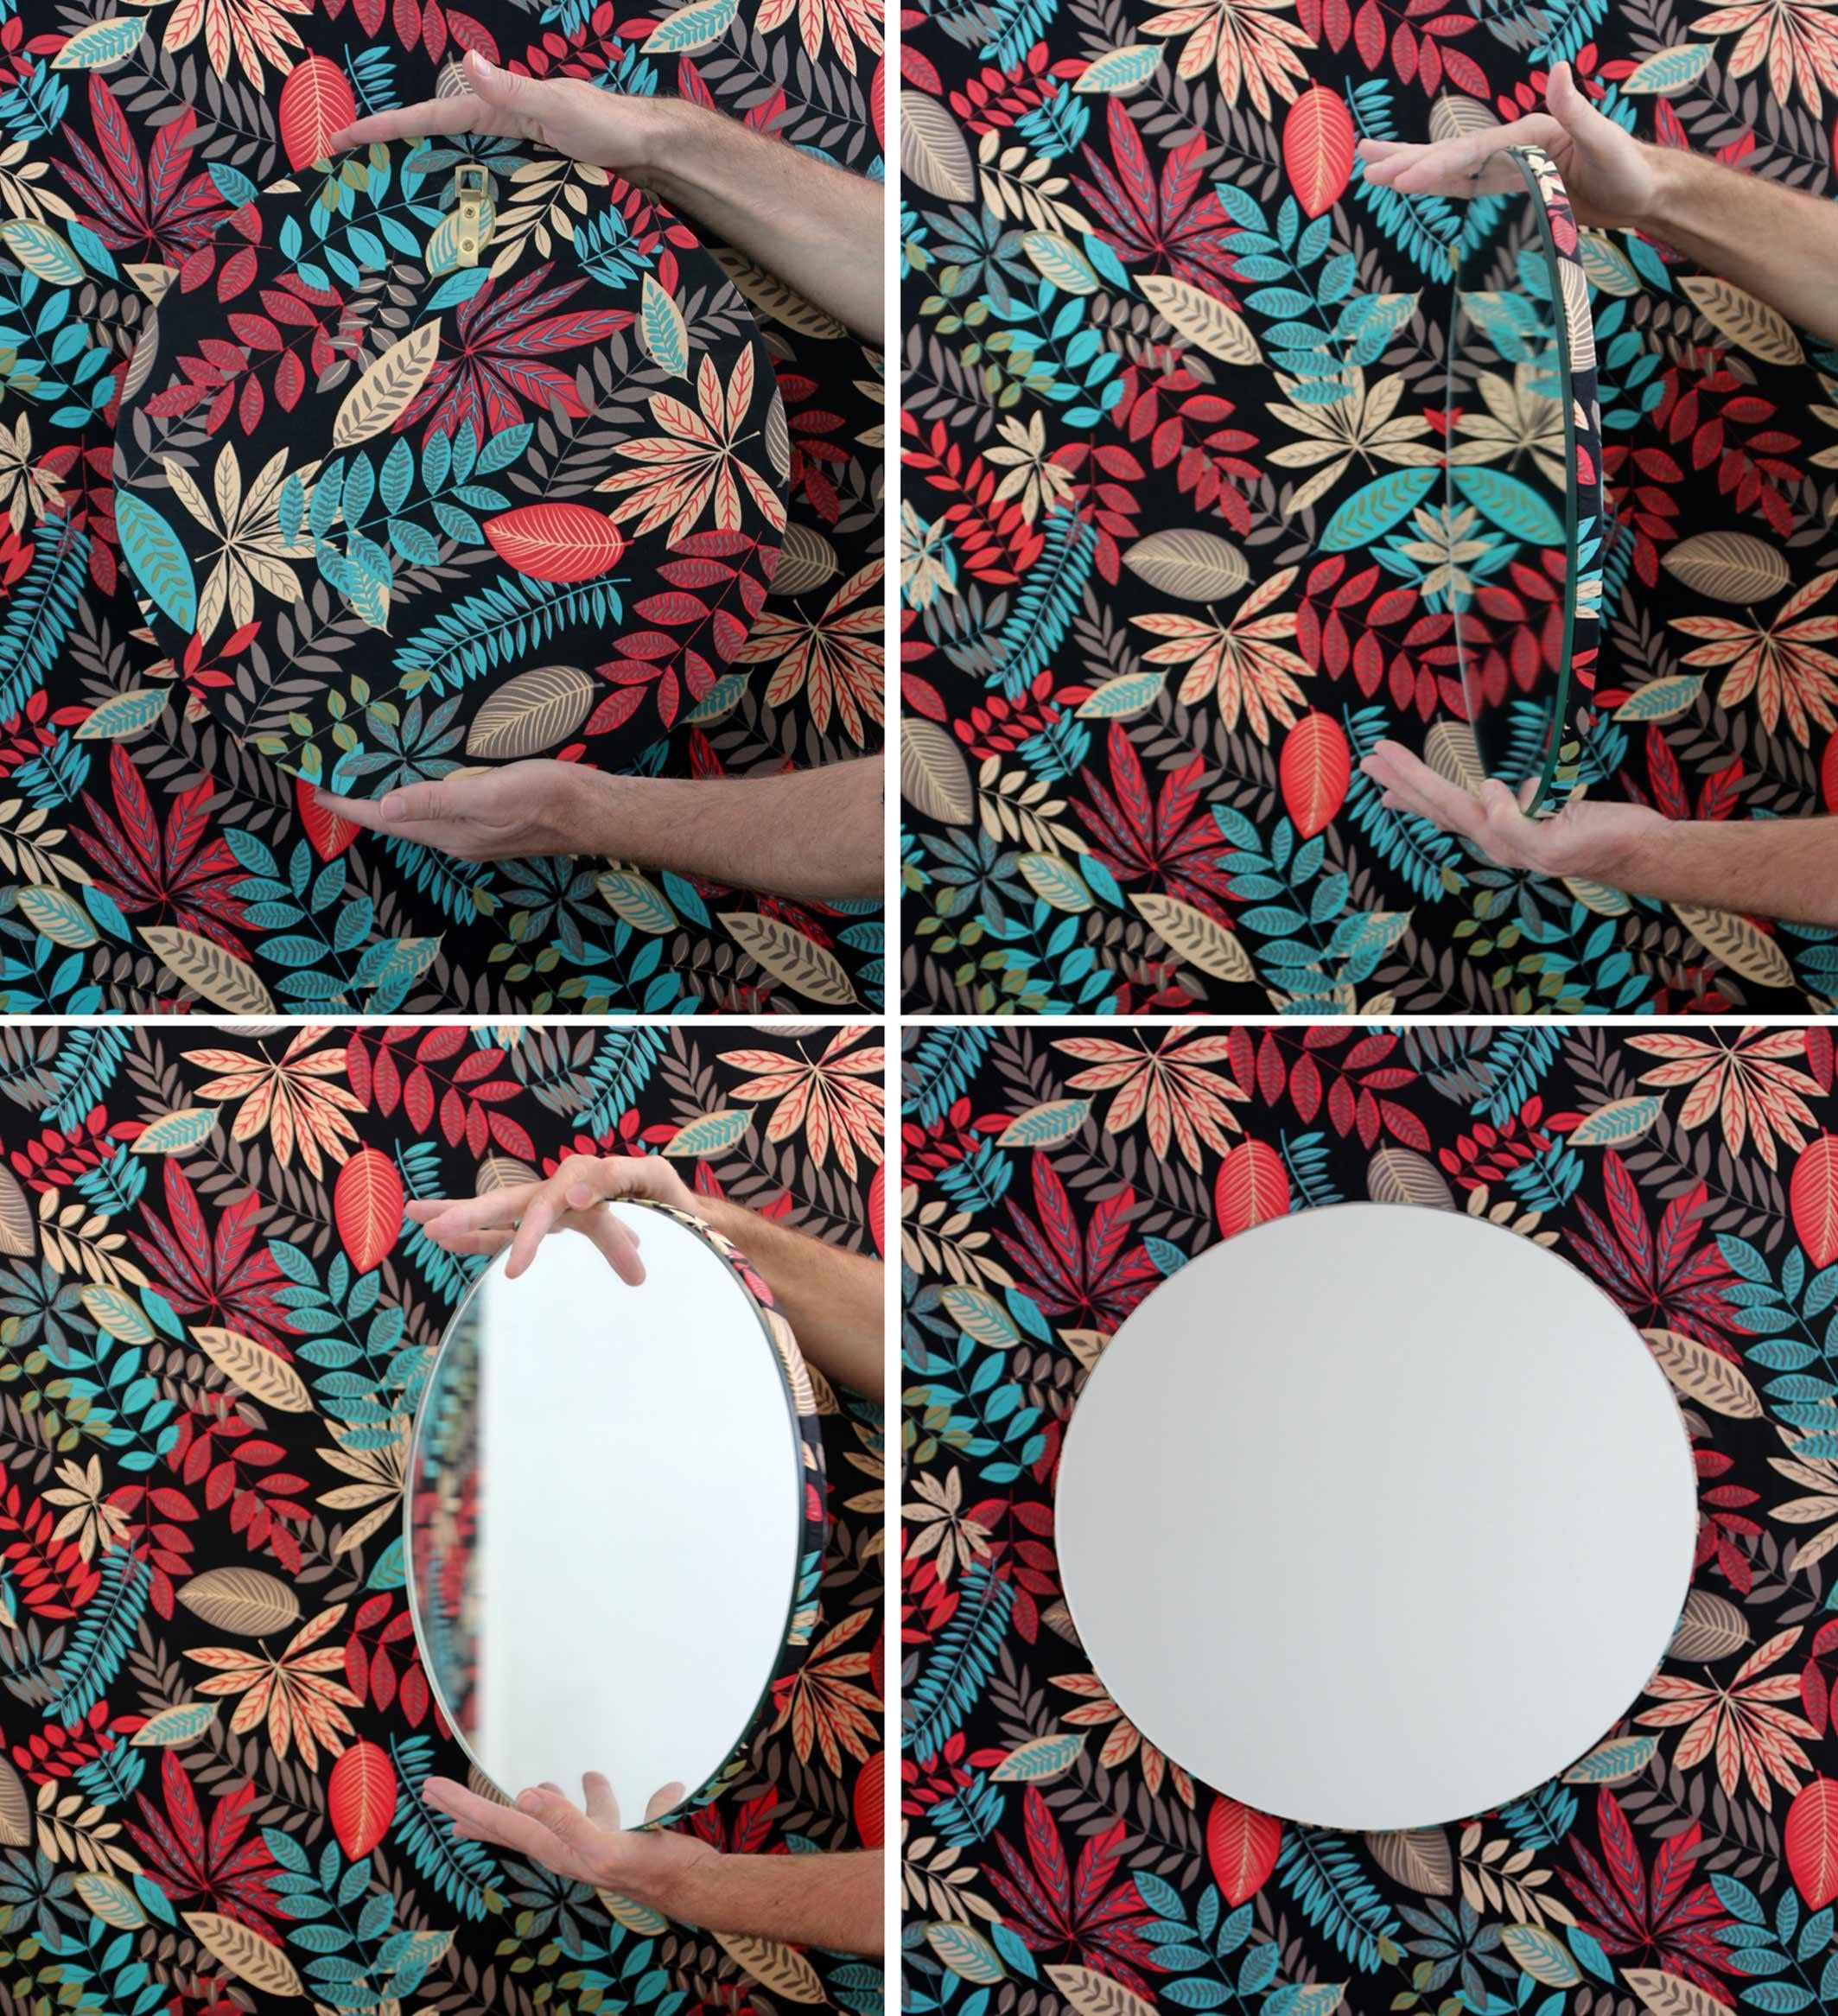 Ravissant miroir rond argenté fabriqué à la main avec un support moderne en tissu imprimé floral.

Disponible en :

Mesures : Petit : 40cm / 15.8